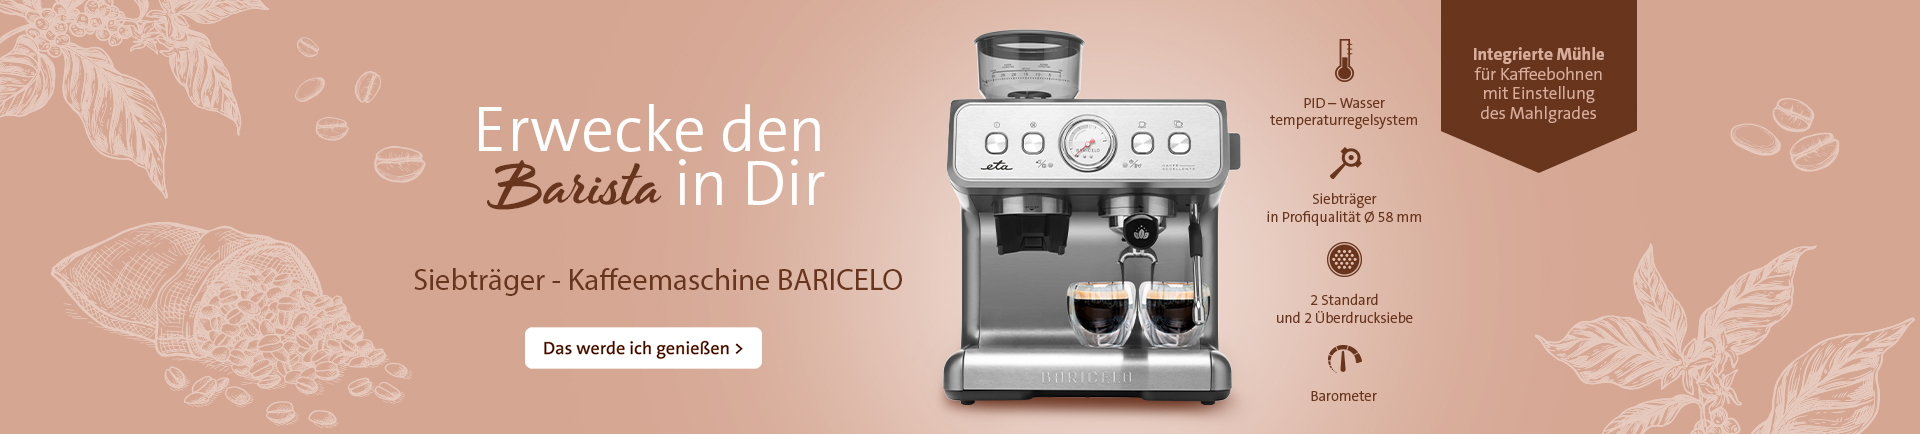 Kaffeemaschine ETA718190000 Baricelo